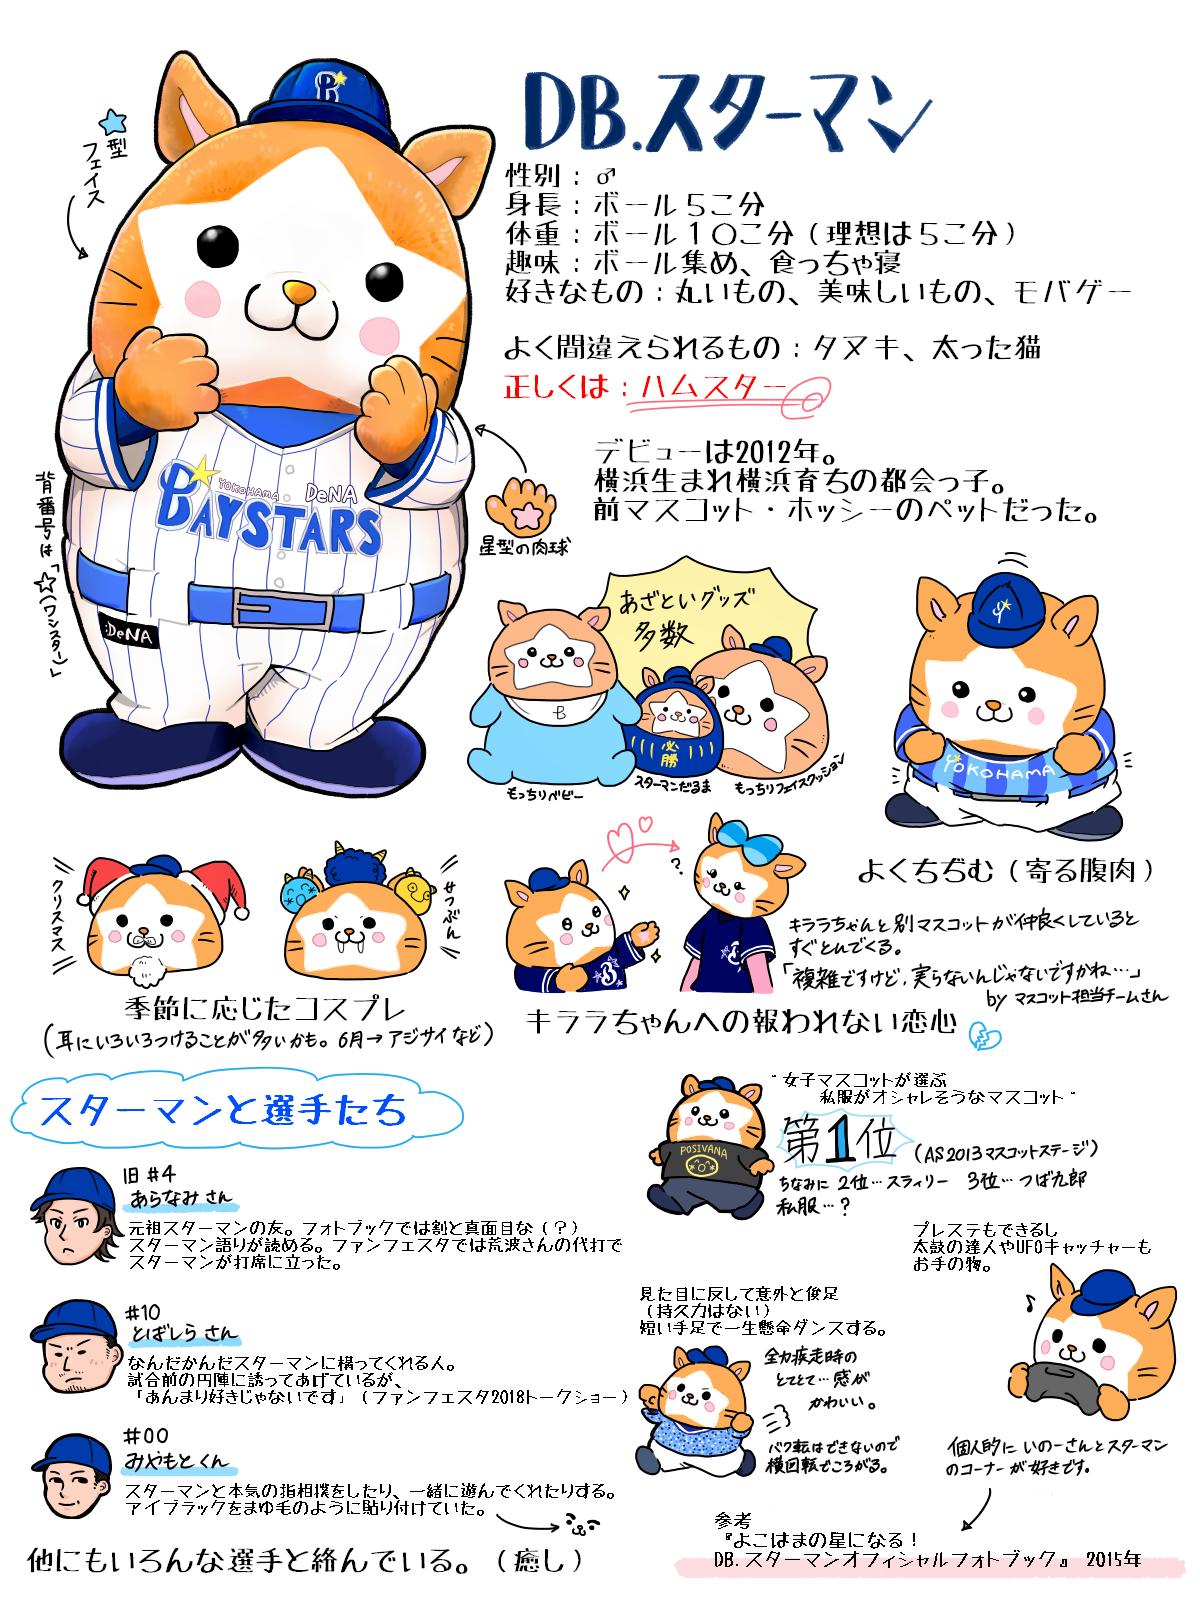 Twitter 上的 しげ尾 もうすぐ野球がはじまるので横浜のあざとかわいいマスコットについて描きました 今年もよろしくお願いします スターマン T Co Lzck7ao4wp Twitter